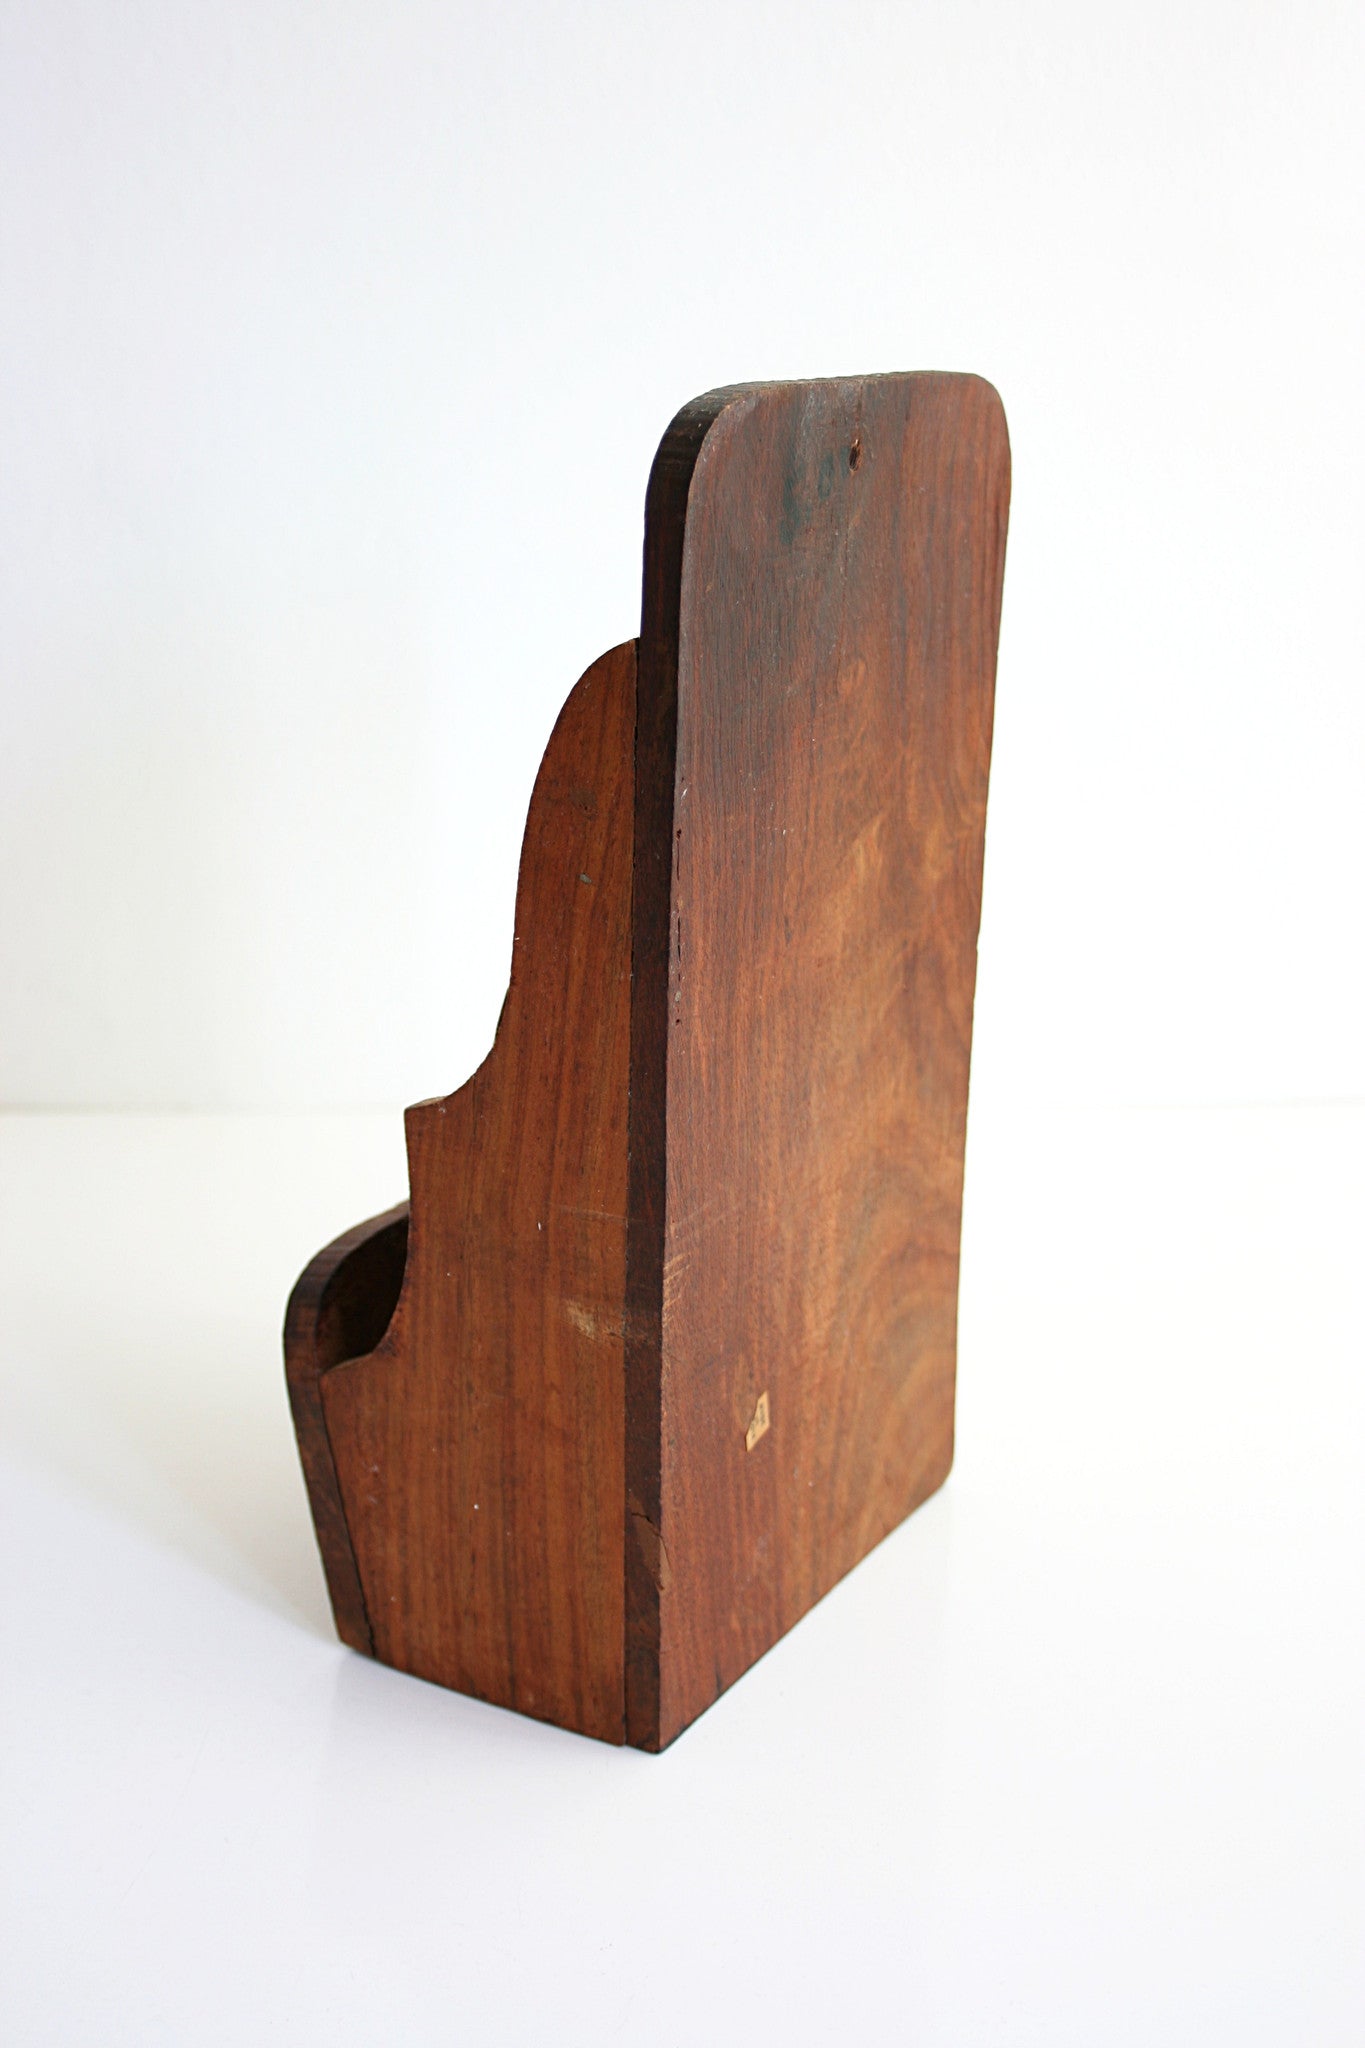 SOLD - Vintage Carved Wood Letter Sorter